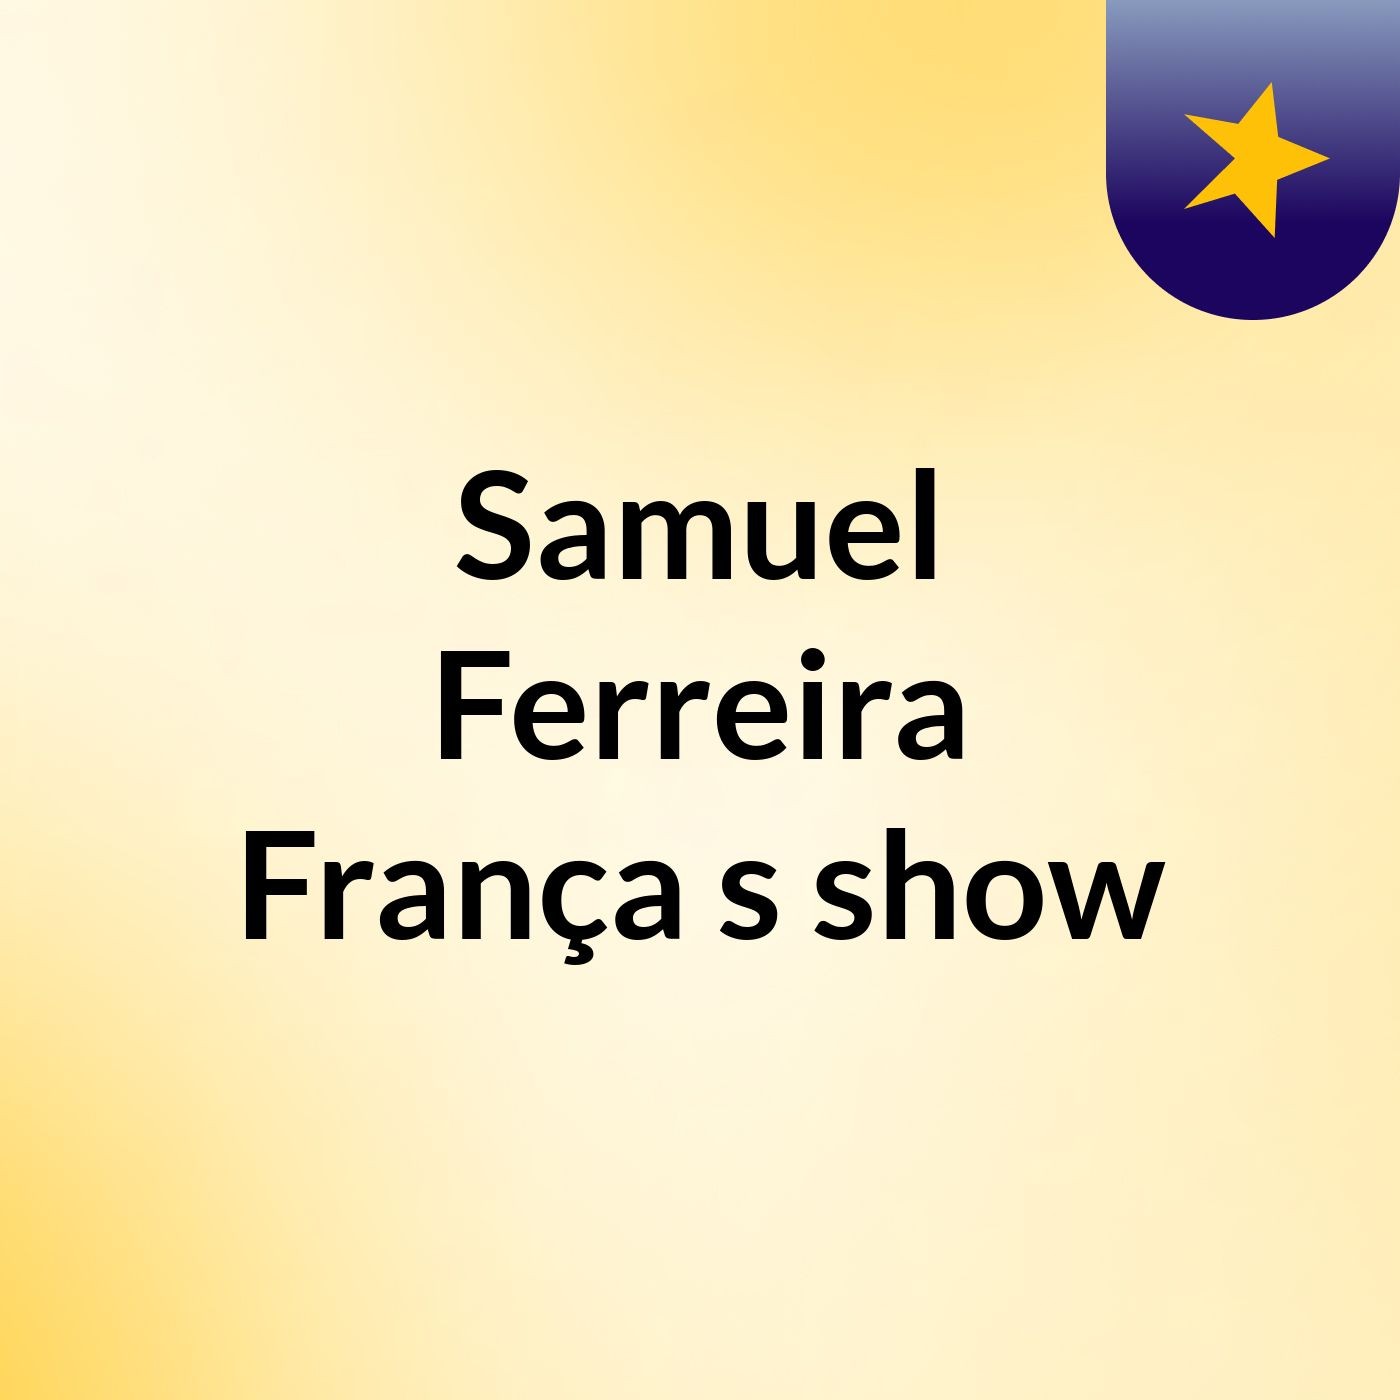 Samuel Ferreira França's show